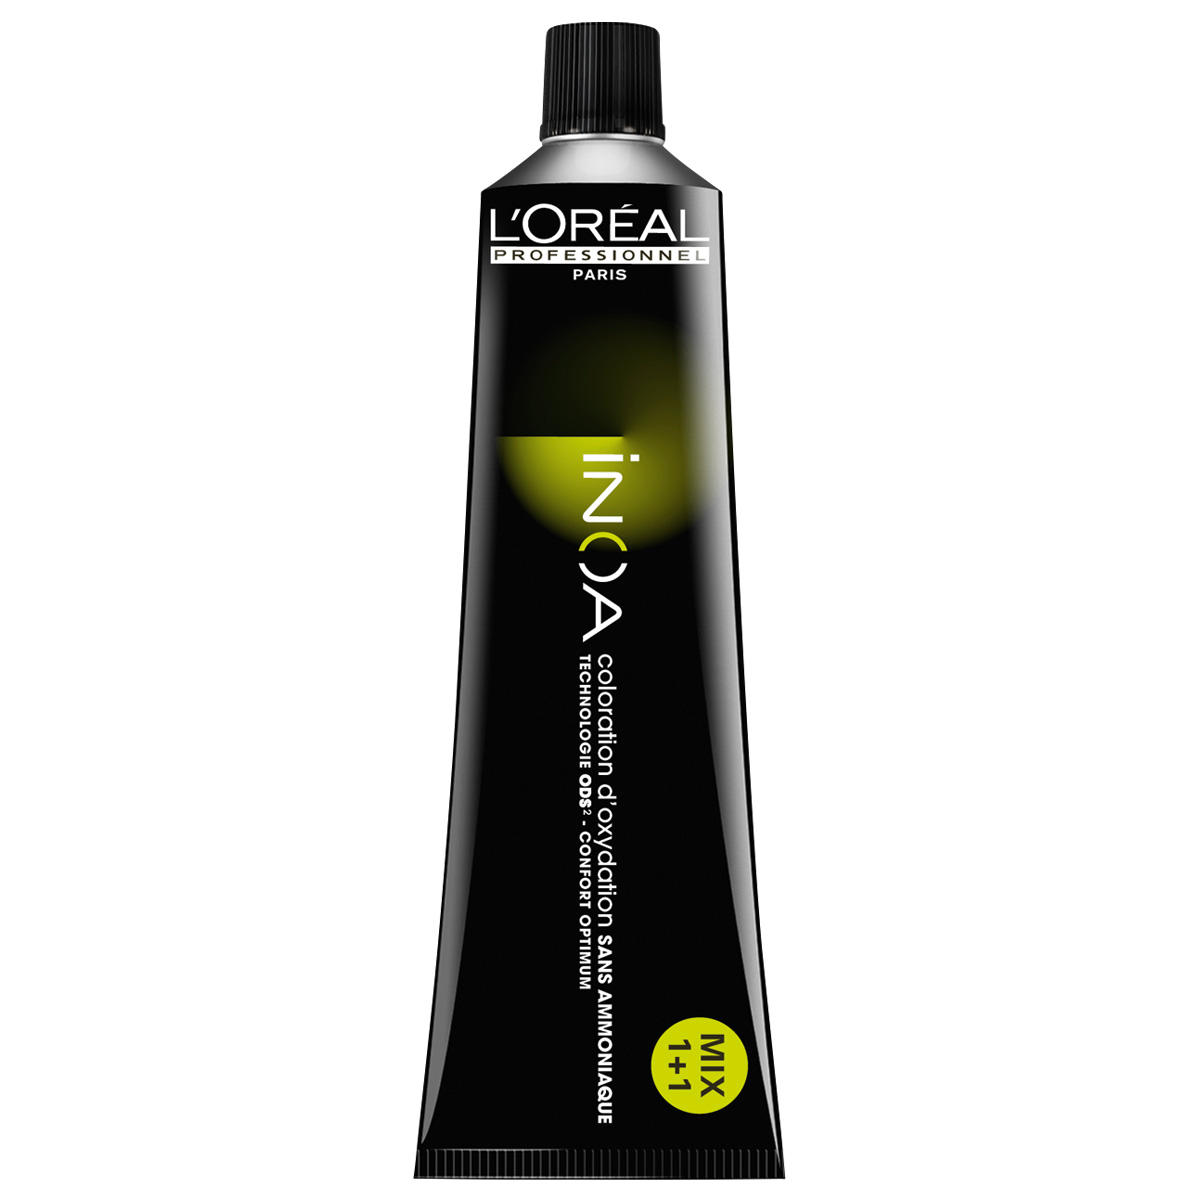 L'Oréal Professionnel Paris Coloration 7,8 blond moyen moka, Tube 60 ml